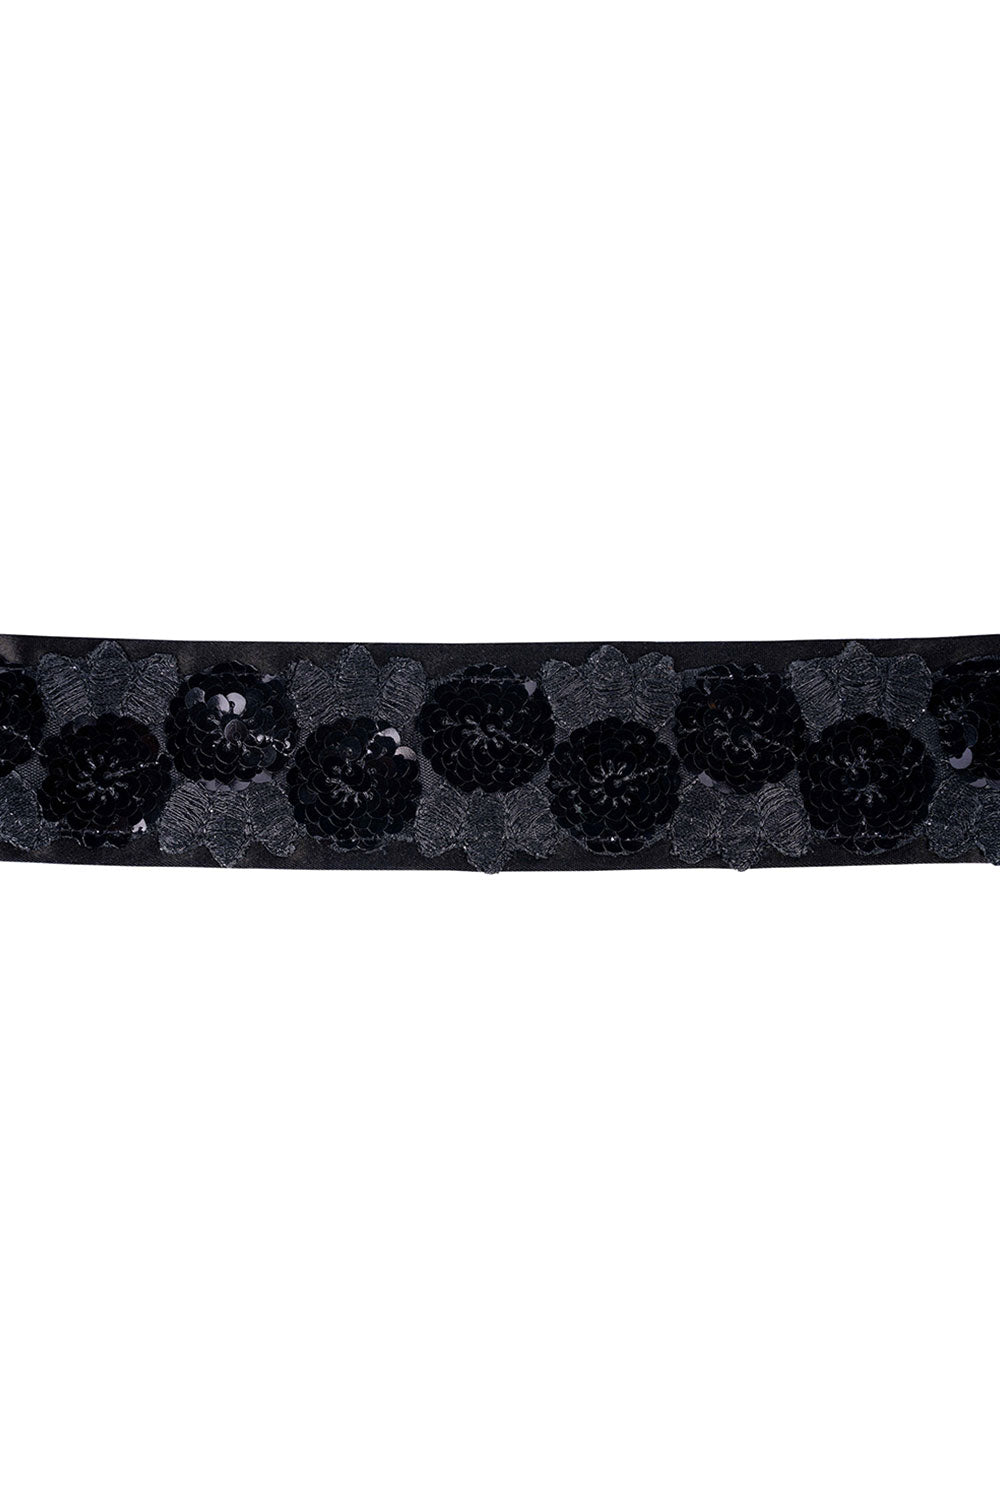 Lara Black Floral Sequins Tie Belt for Saree & Dresses